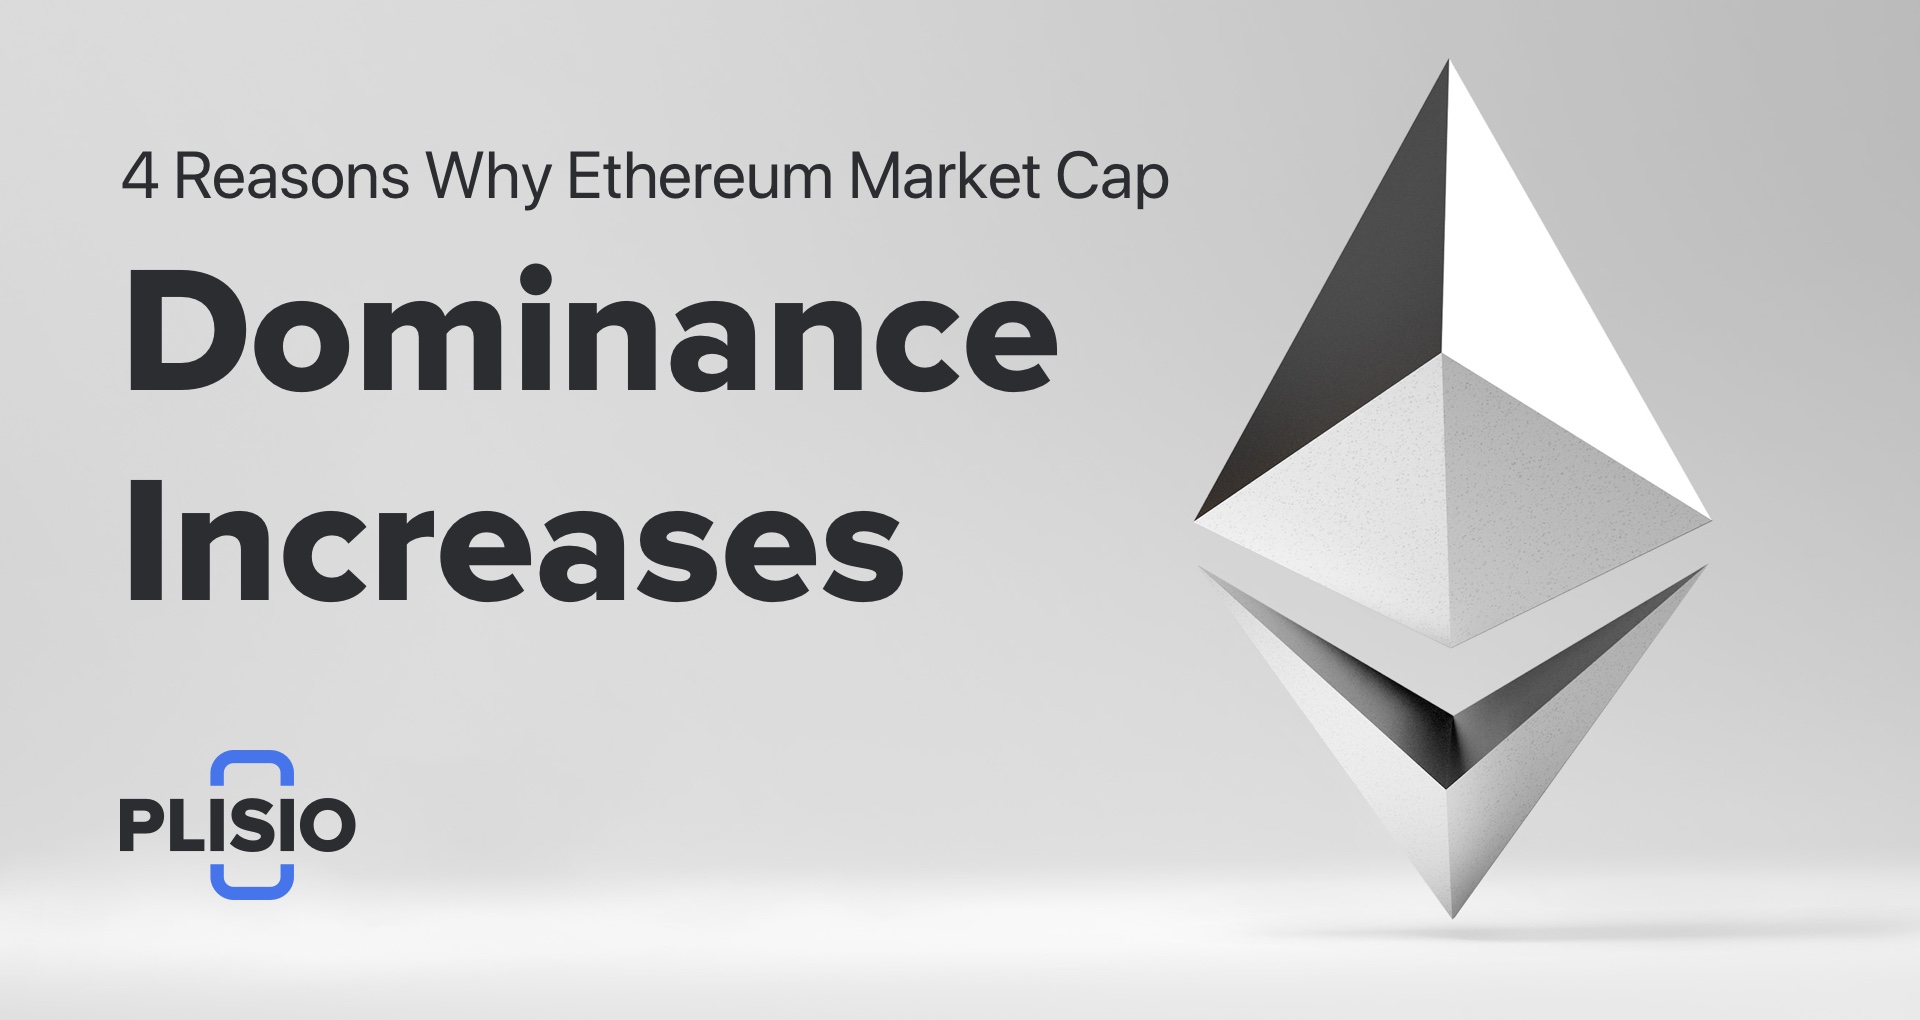 4 Gründe, warum die Marktkapitalisierungsdominanz von Ethereum zunimmt